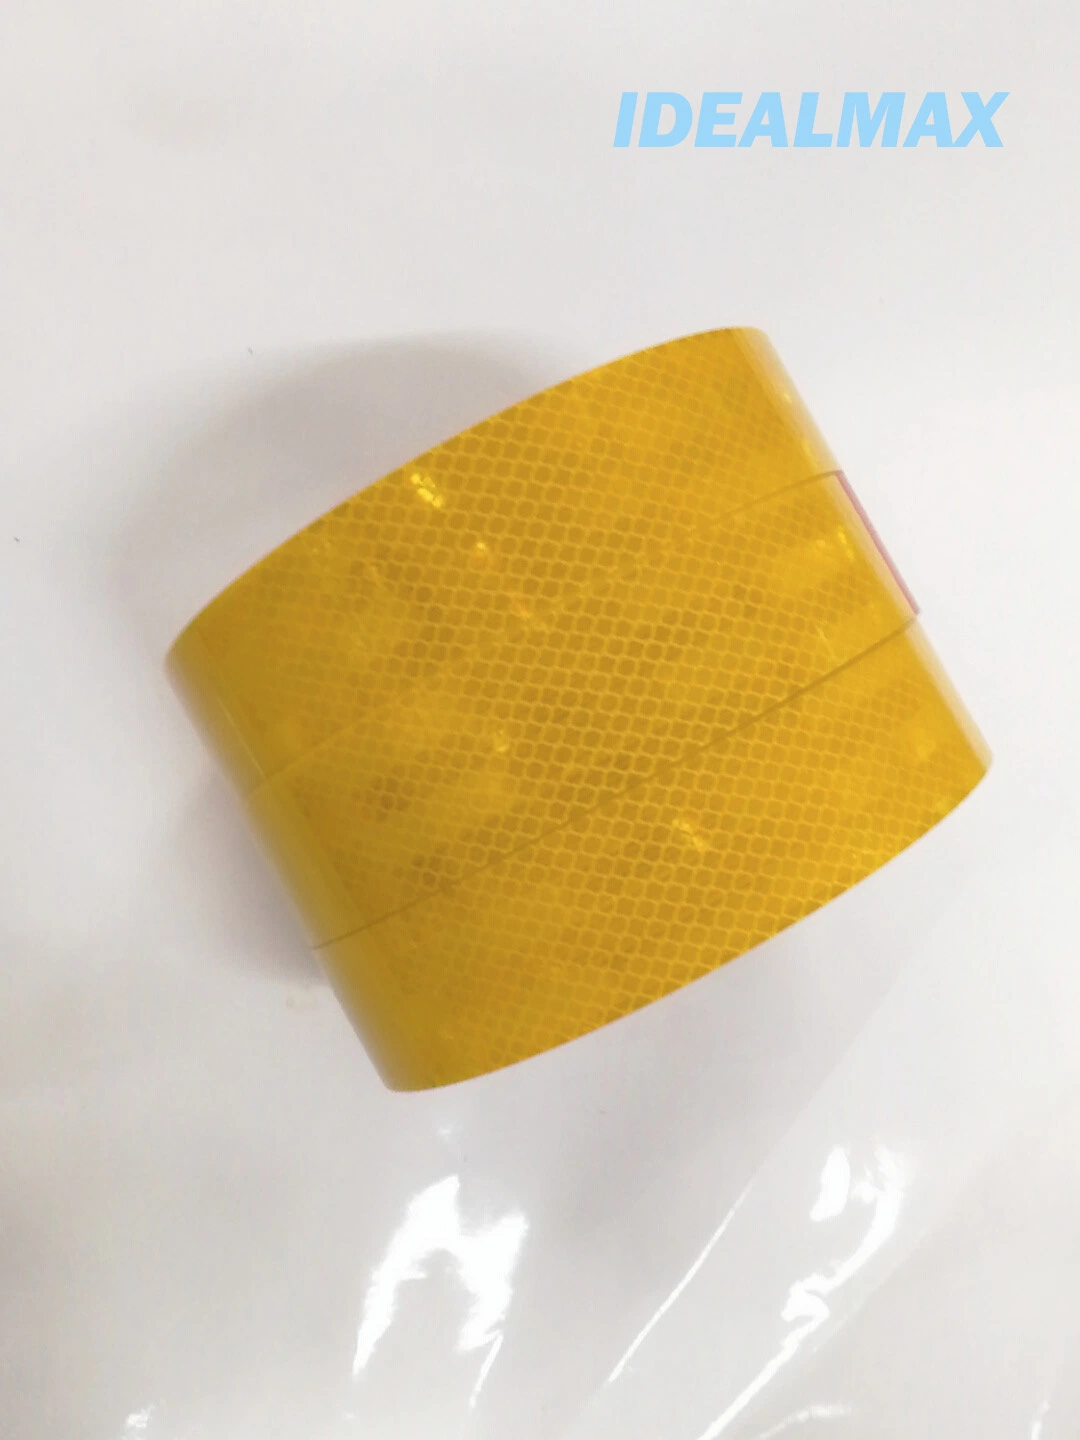 Prismatic Retro Reflective Sticker Paper Yellow